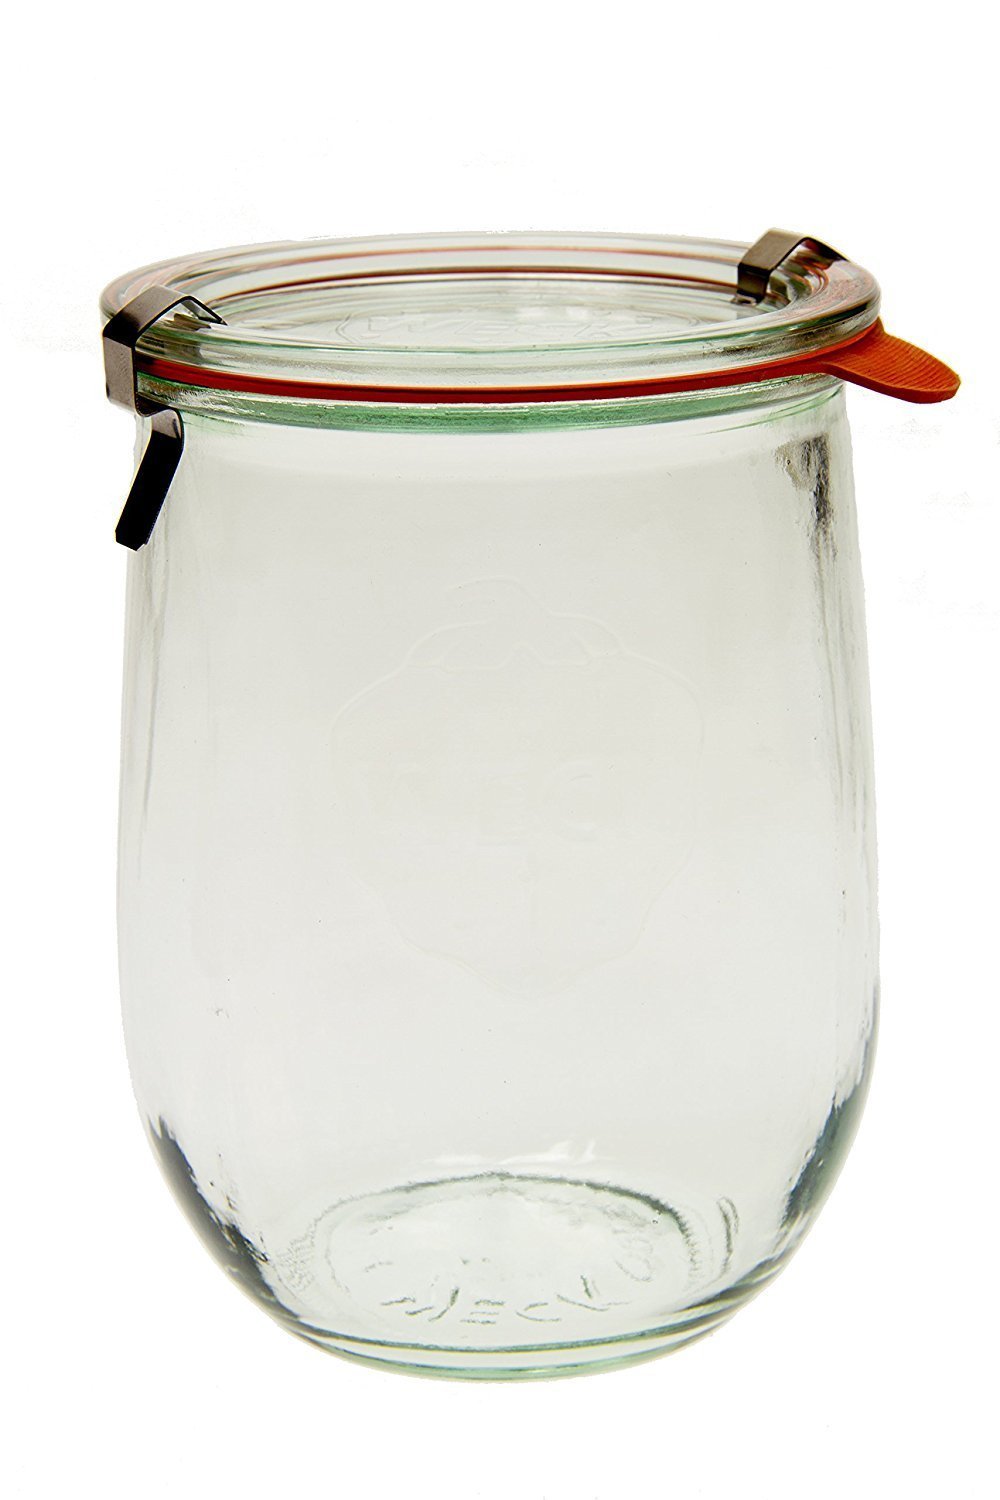 Weck 745 Tulip Jar - 1 Liter, Set of 6 Clear